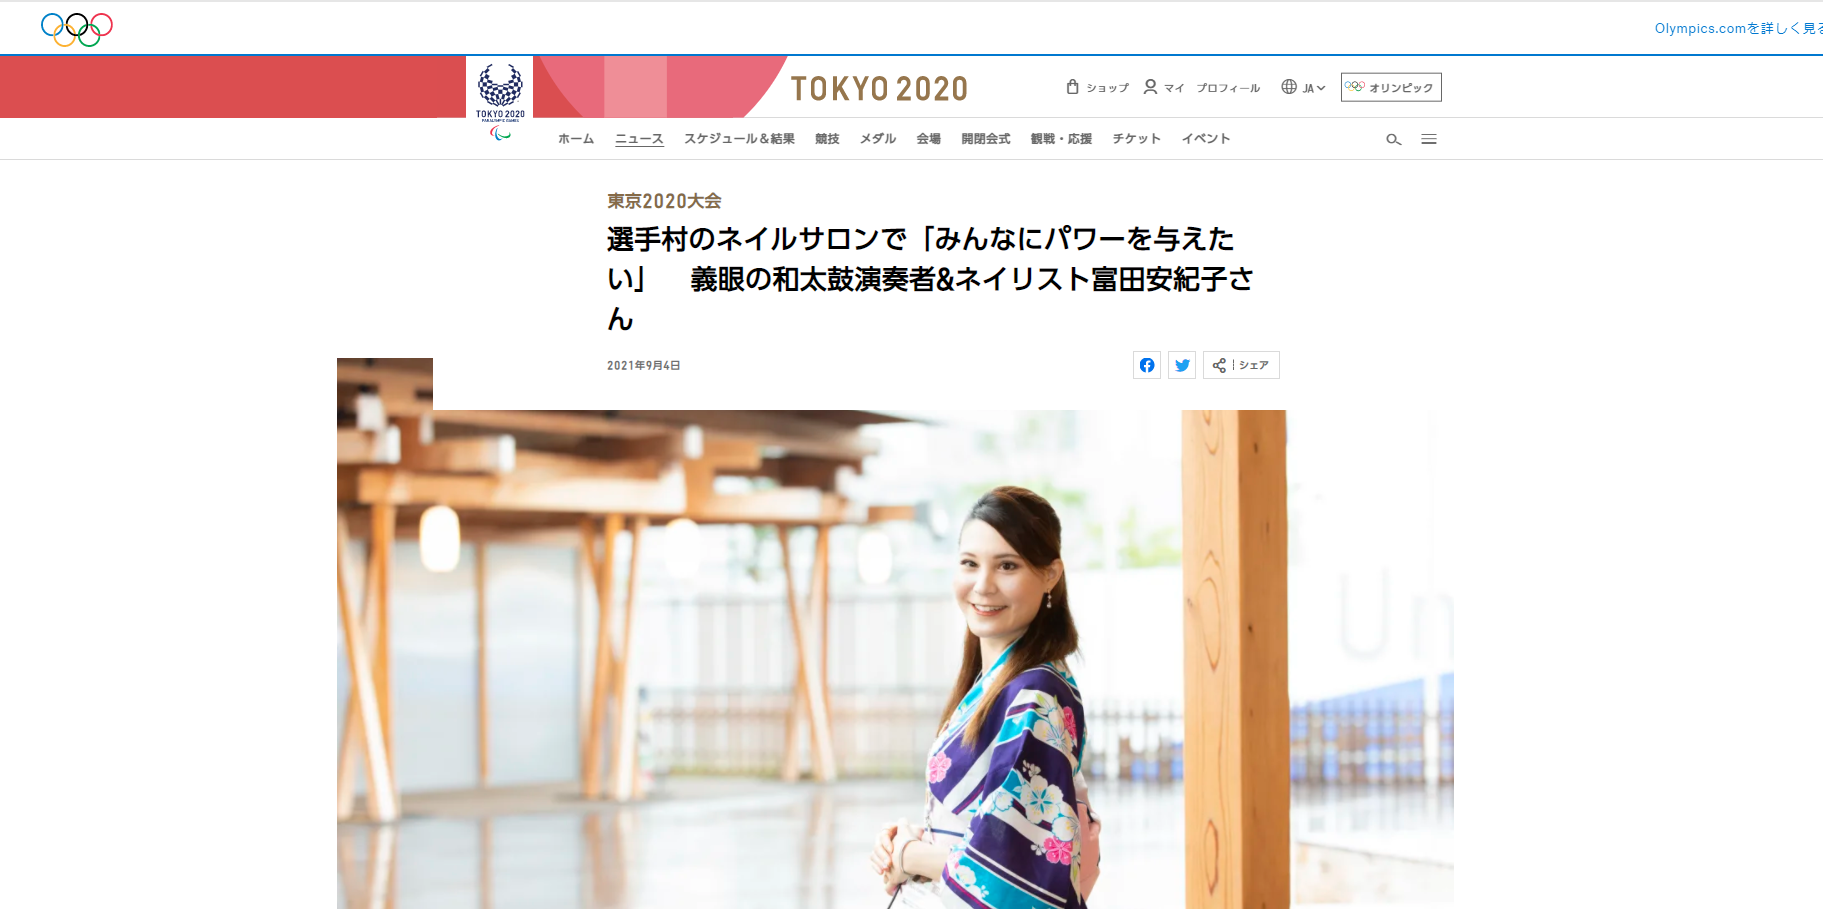 パラリンピック競技者以外では、数少ない快挙！東京2020オリンピック・パラリンピック公式ホームページに、開会式電子和太鼓奏者でネイリスト・視覚障がいで義眼の富田安紀子の特集記事が掲載されました。のサブ画像1